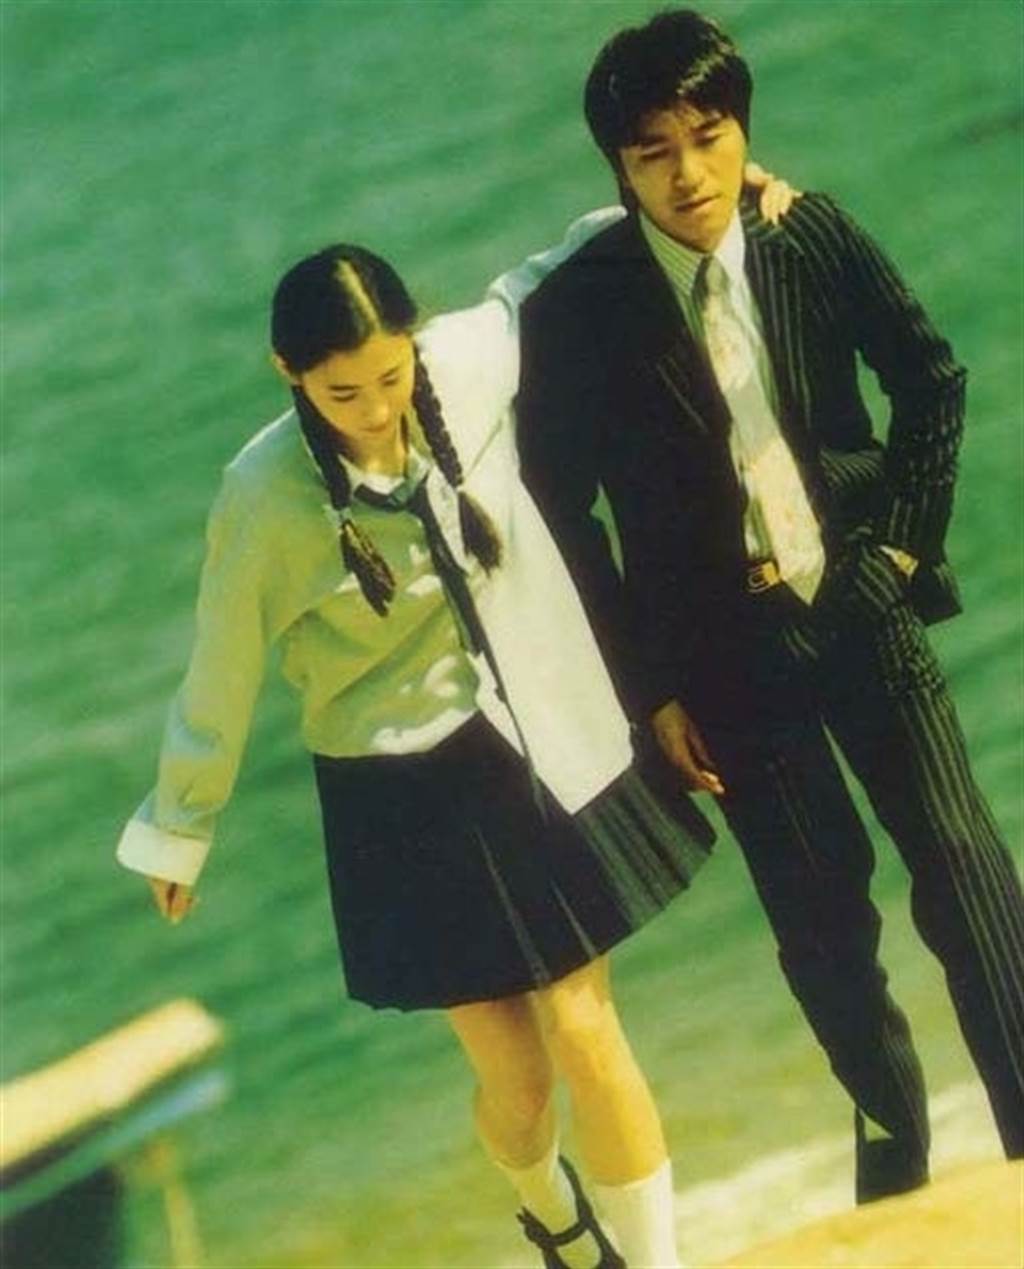 当年张栢芝初出道在《喜剧之王》的校服Look。